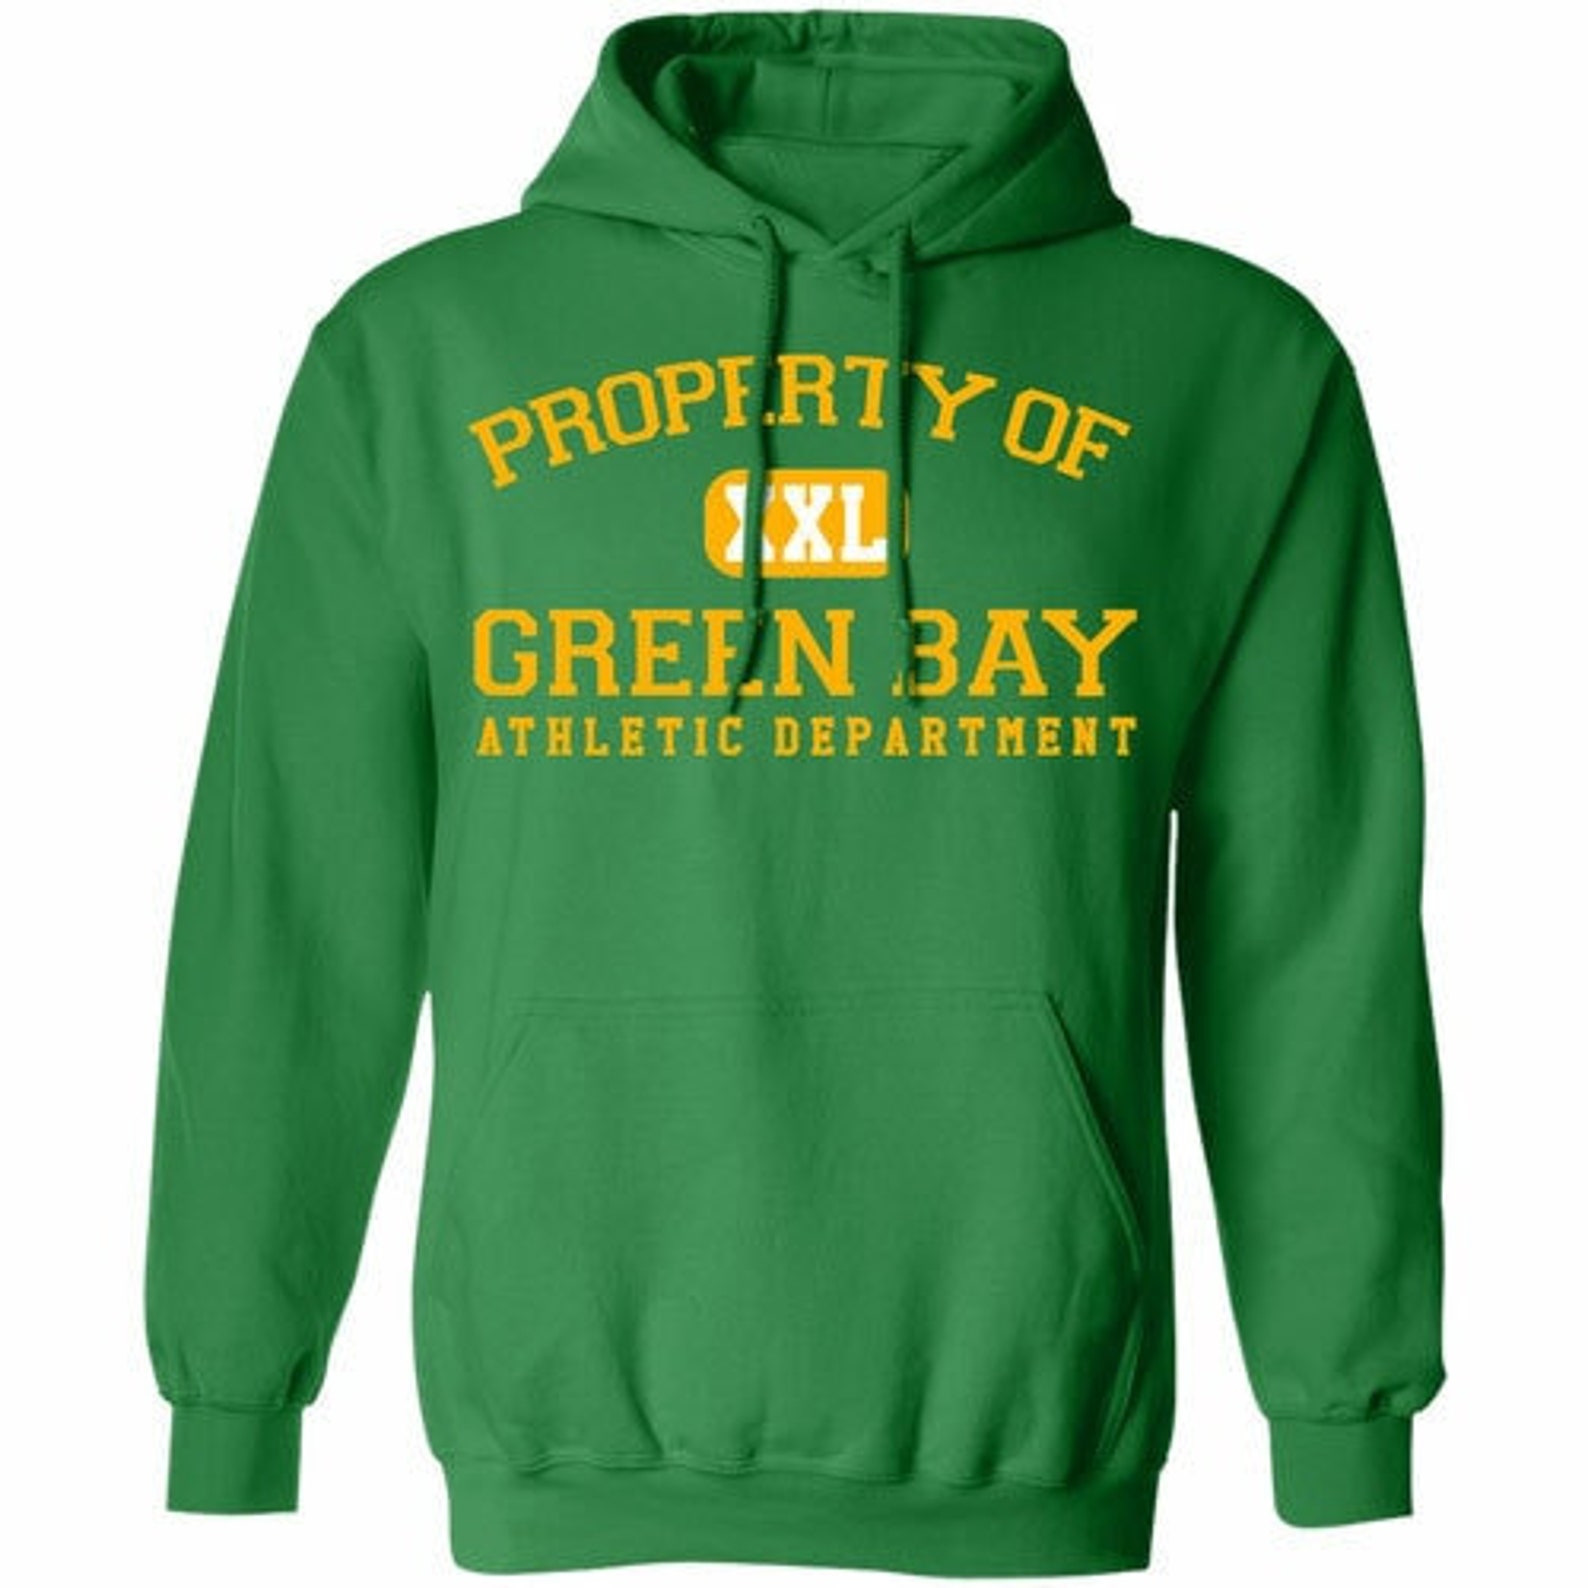 Green Bay Athletic Dept Hoodie | Etsy